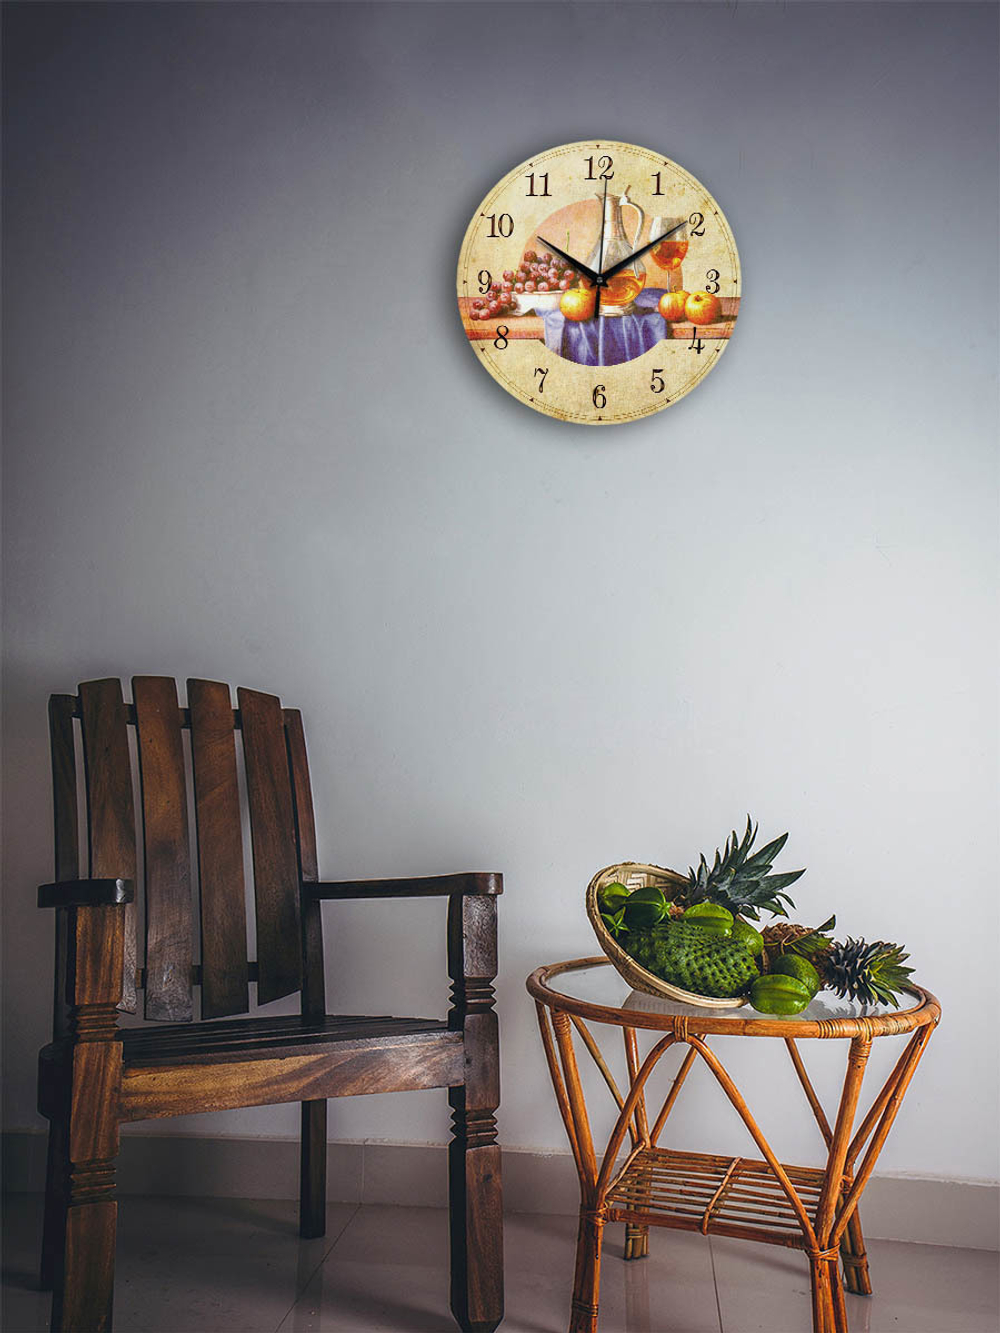 Часы настенные деревянные IDEAL "Вино и фрукты", 30 см, бесшумные Декор для дома, подарок